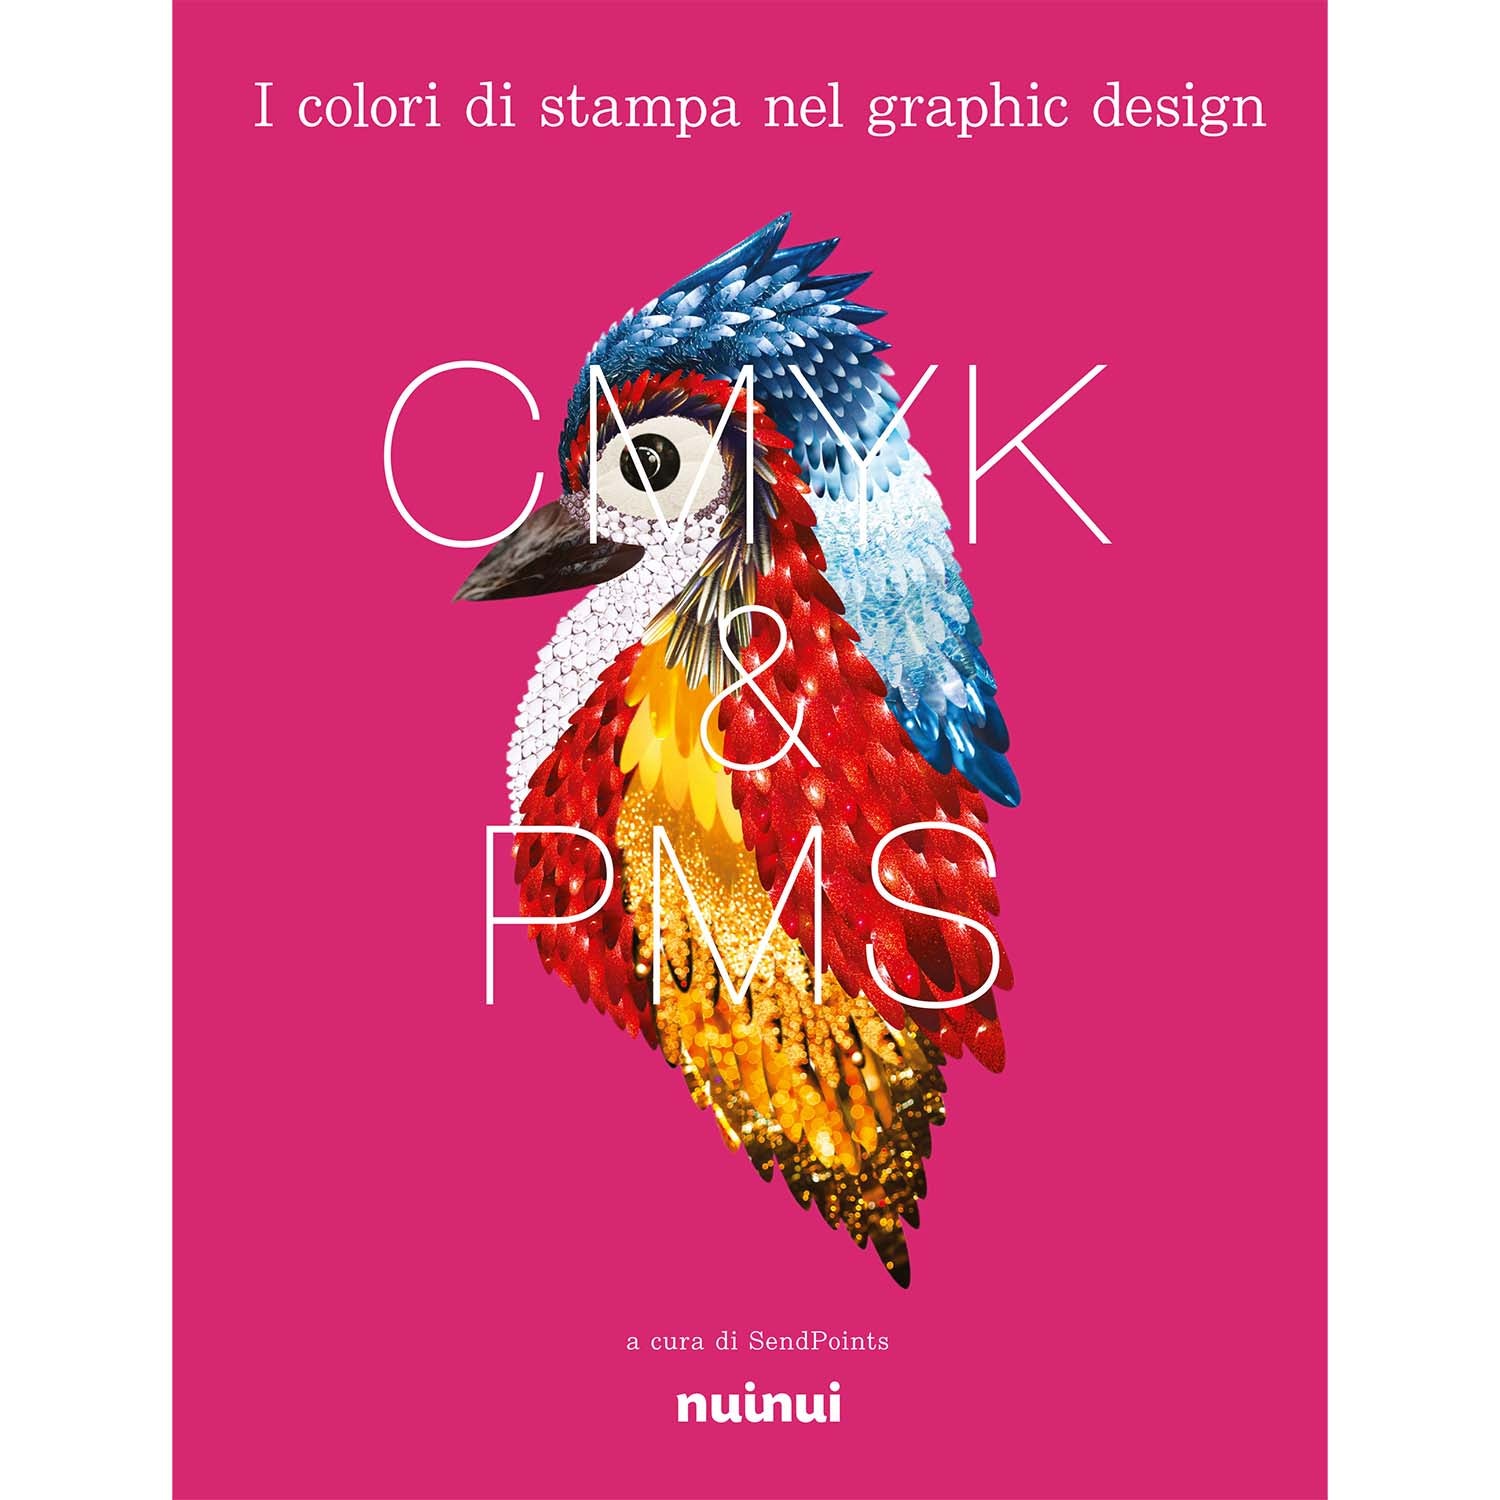 I colori di stampa nel graphic design - CMYK & PMS